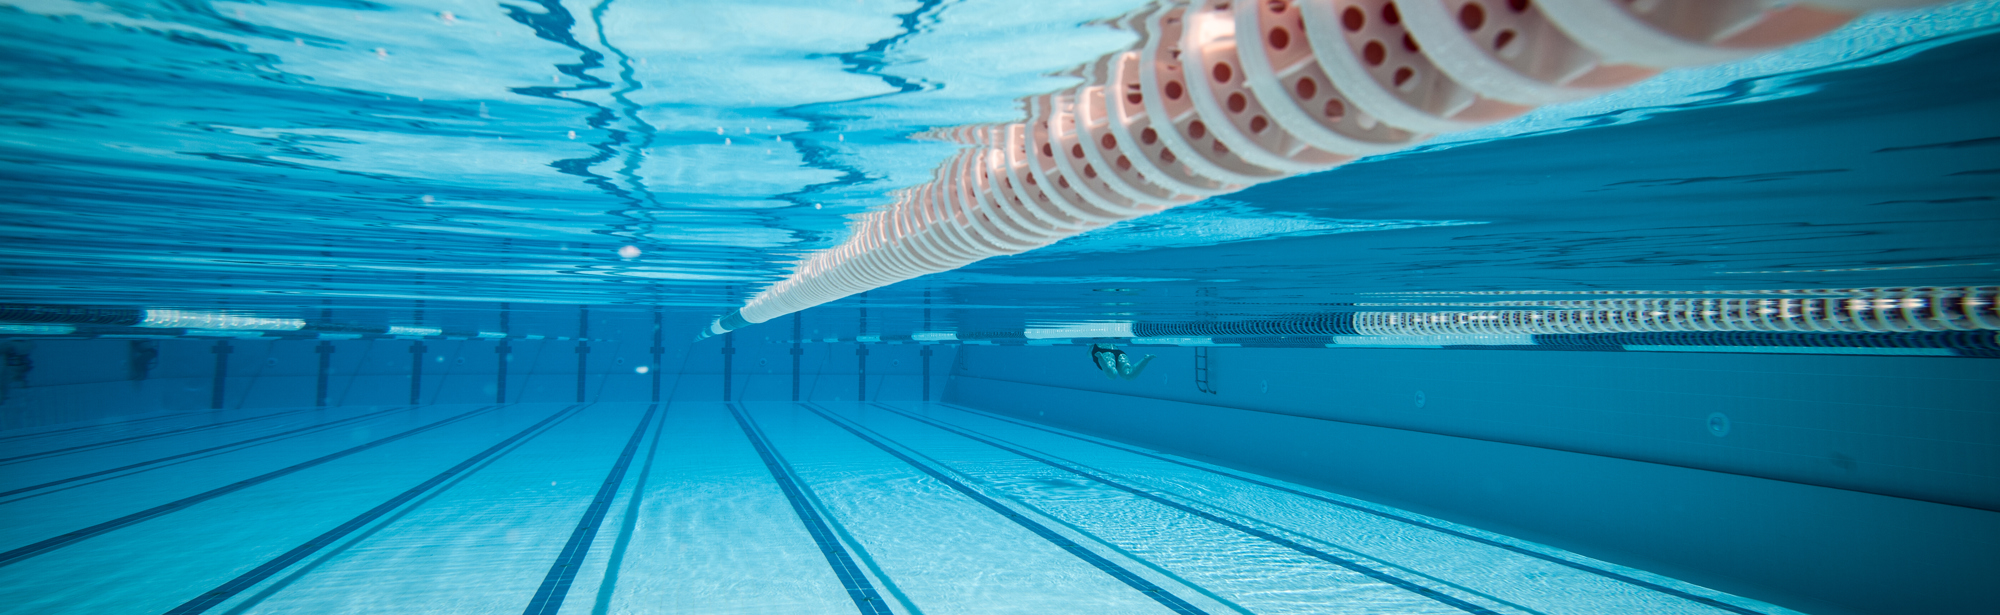 onderwaterfoto van een zwembad